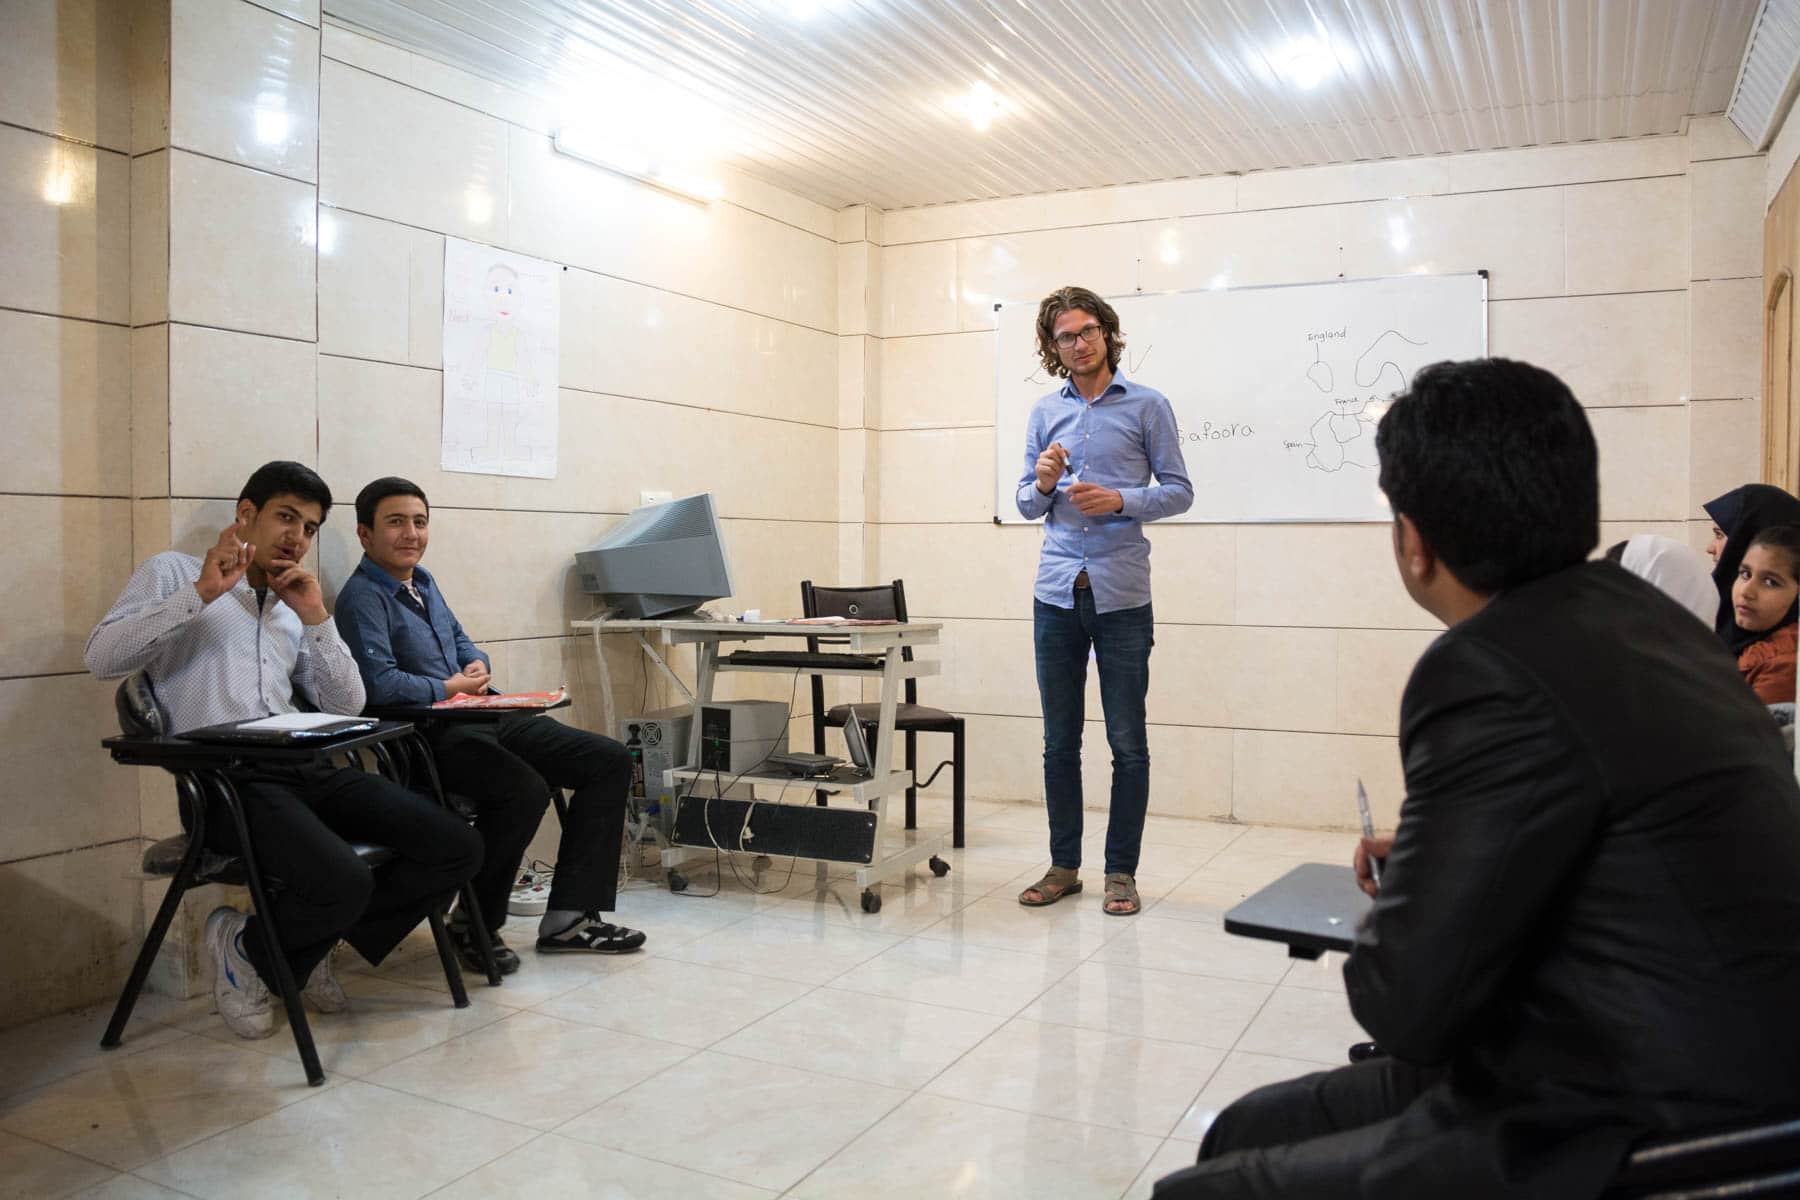 Sebastiaan teaching English in Iran, in the small town of Mobarakeh.